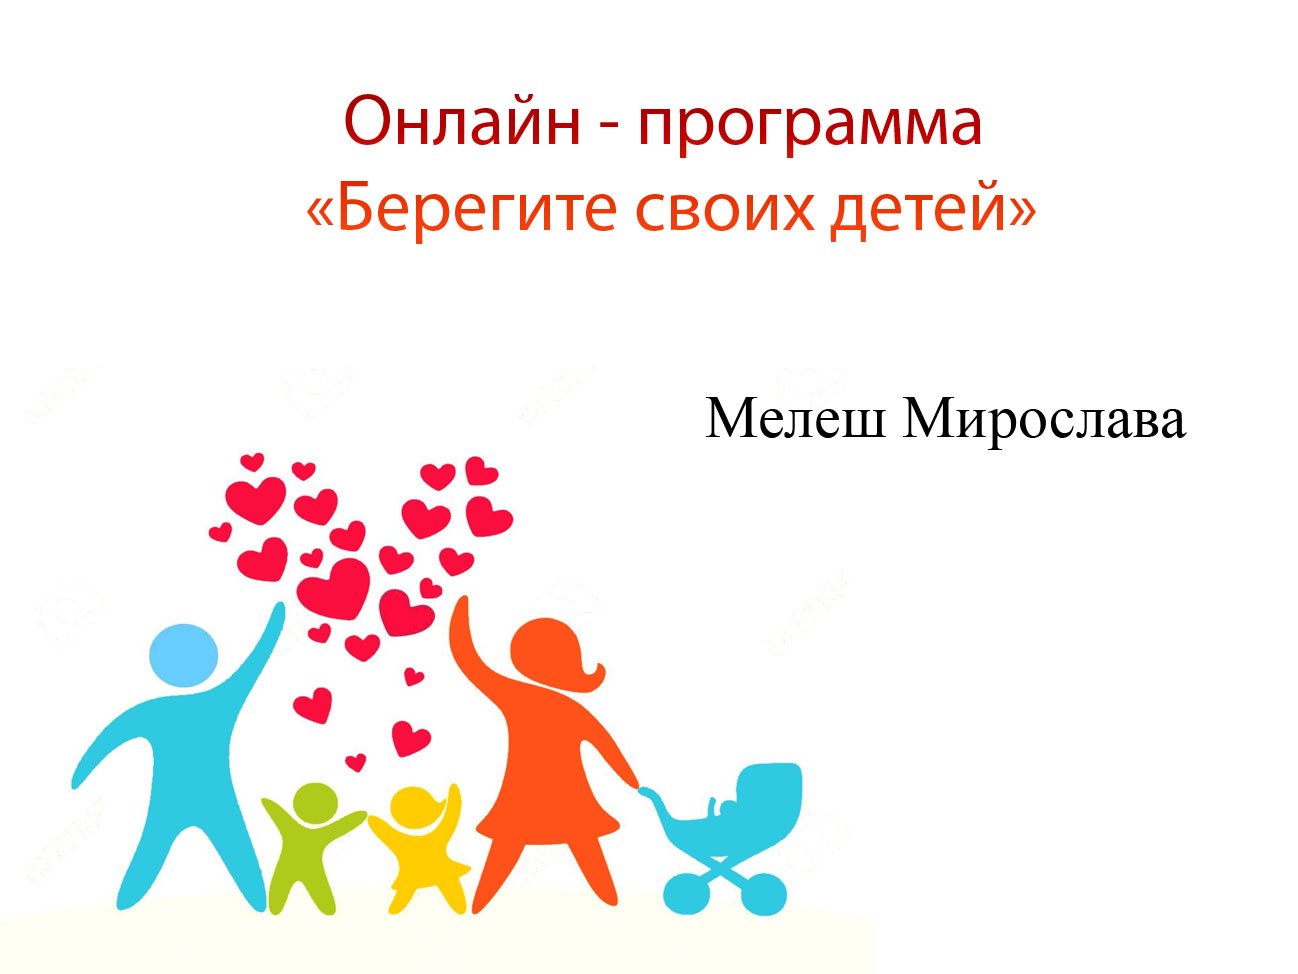 Мелеш Мирослава "Солнечный круг" - программа "Берегите своих детей"